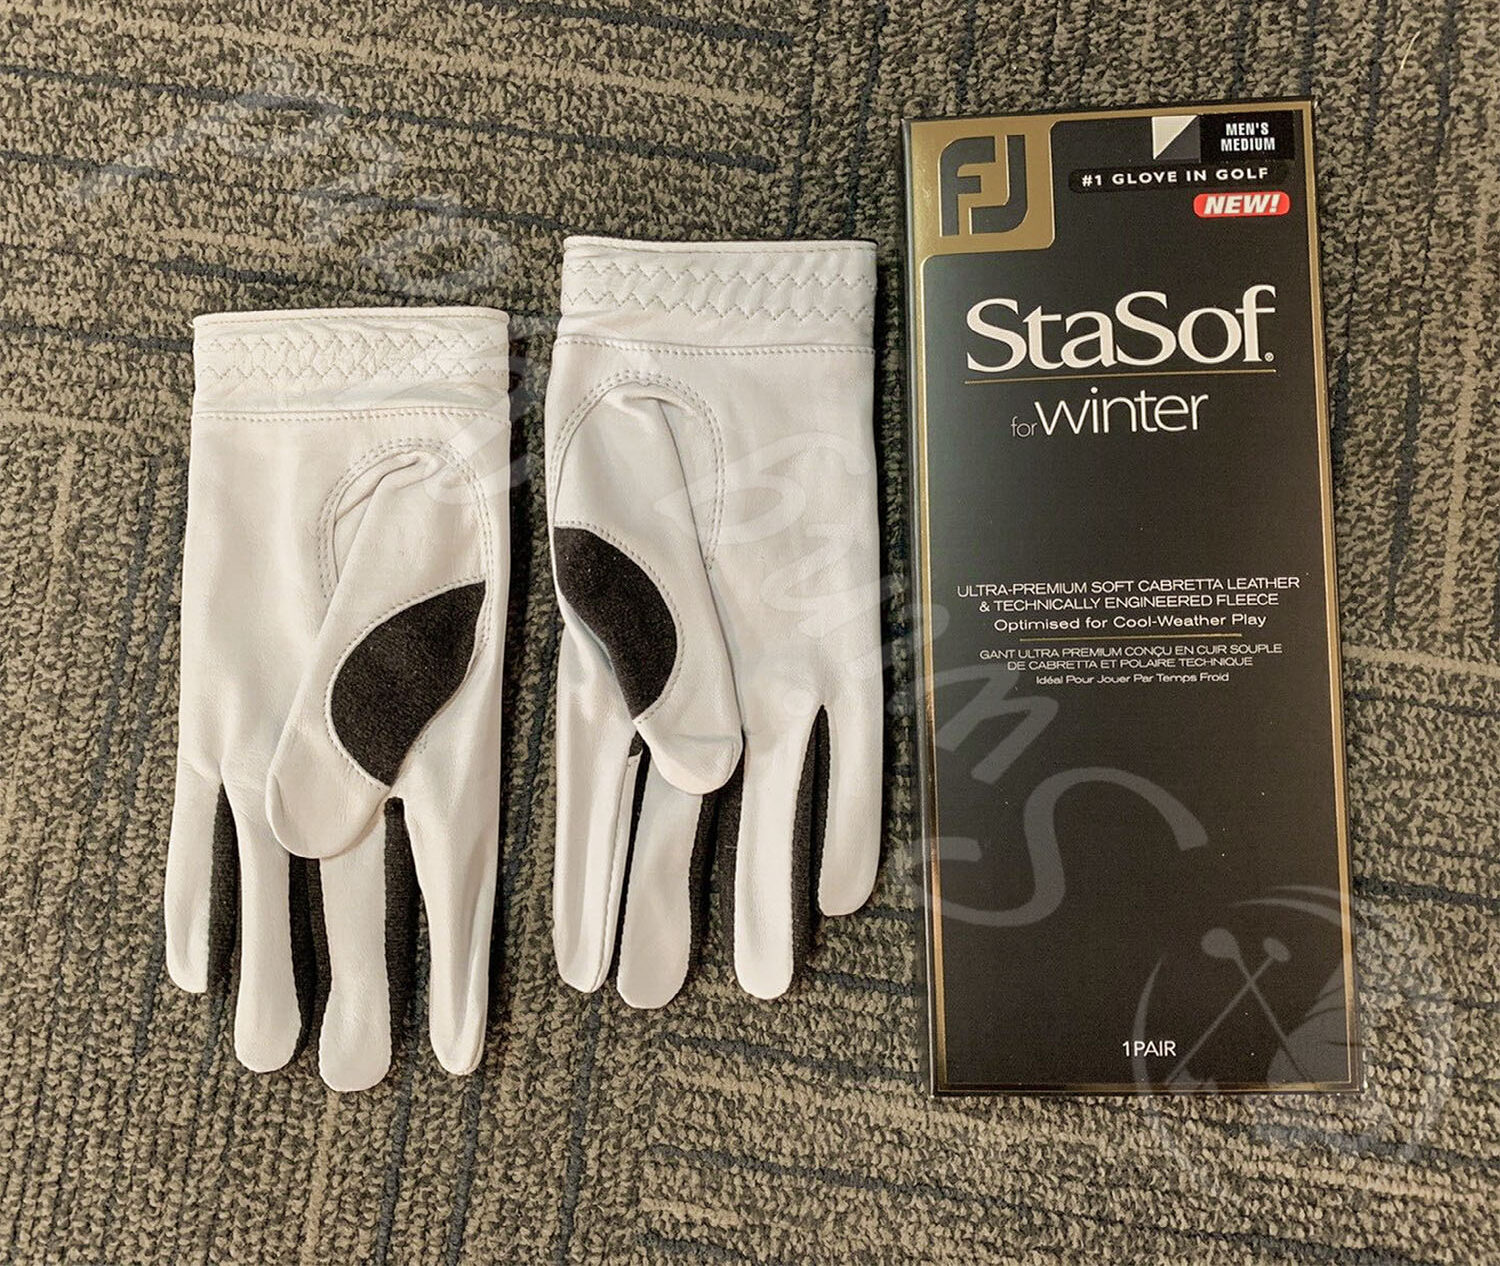 My white FootJoy StaSof winter golf gloves on the floor